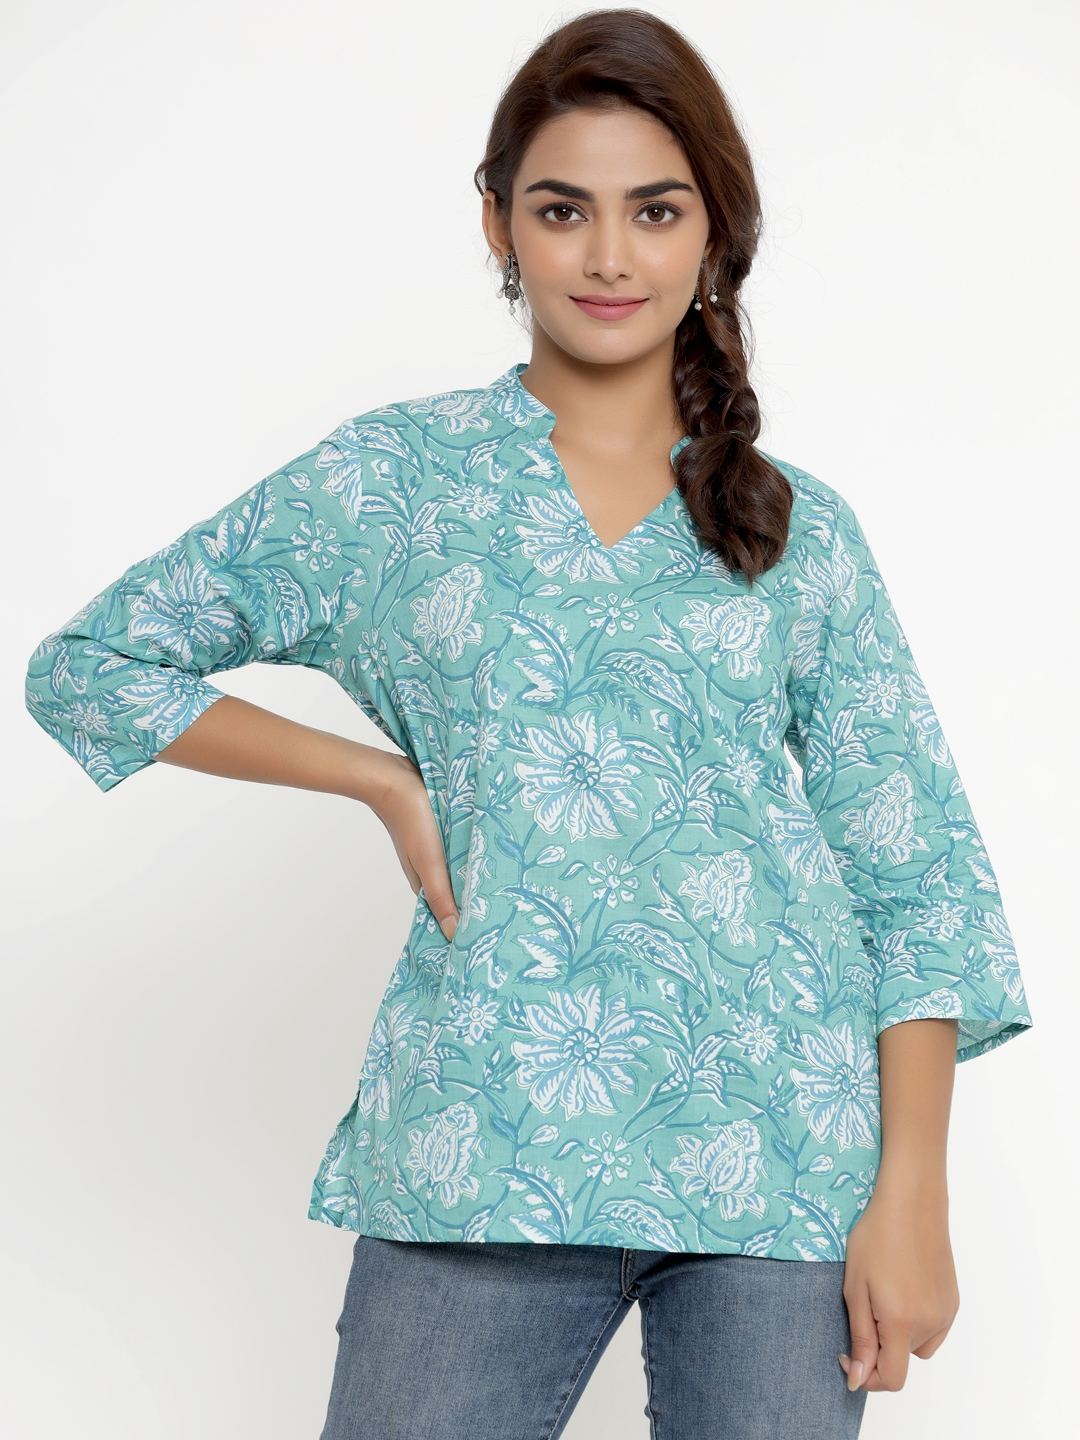 Miravan | Miravan Cotton Printed Western top/Tunic for Women's/ Girls